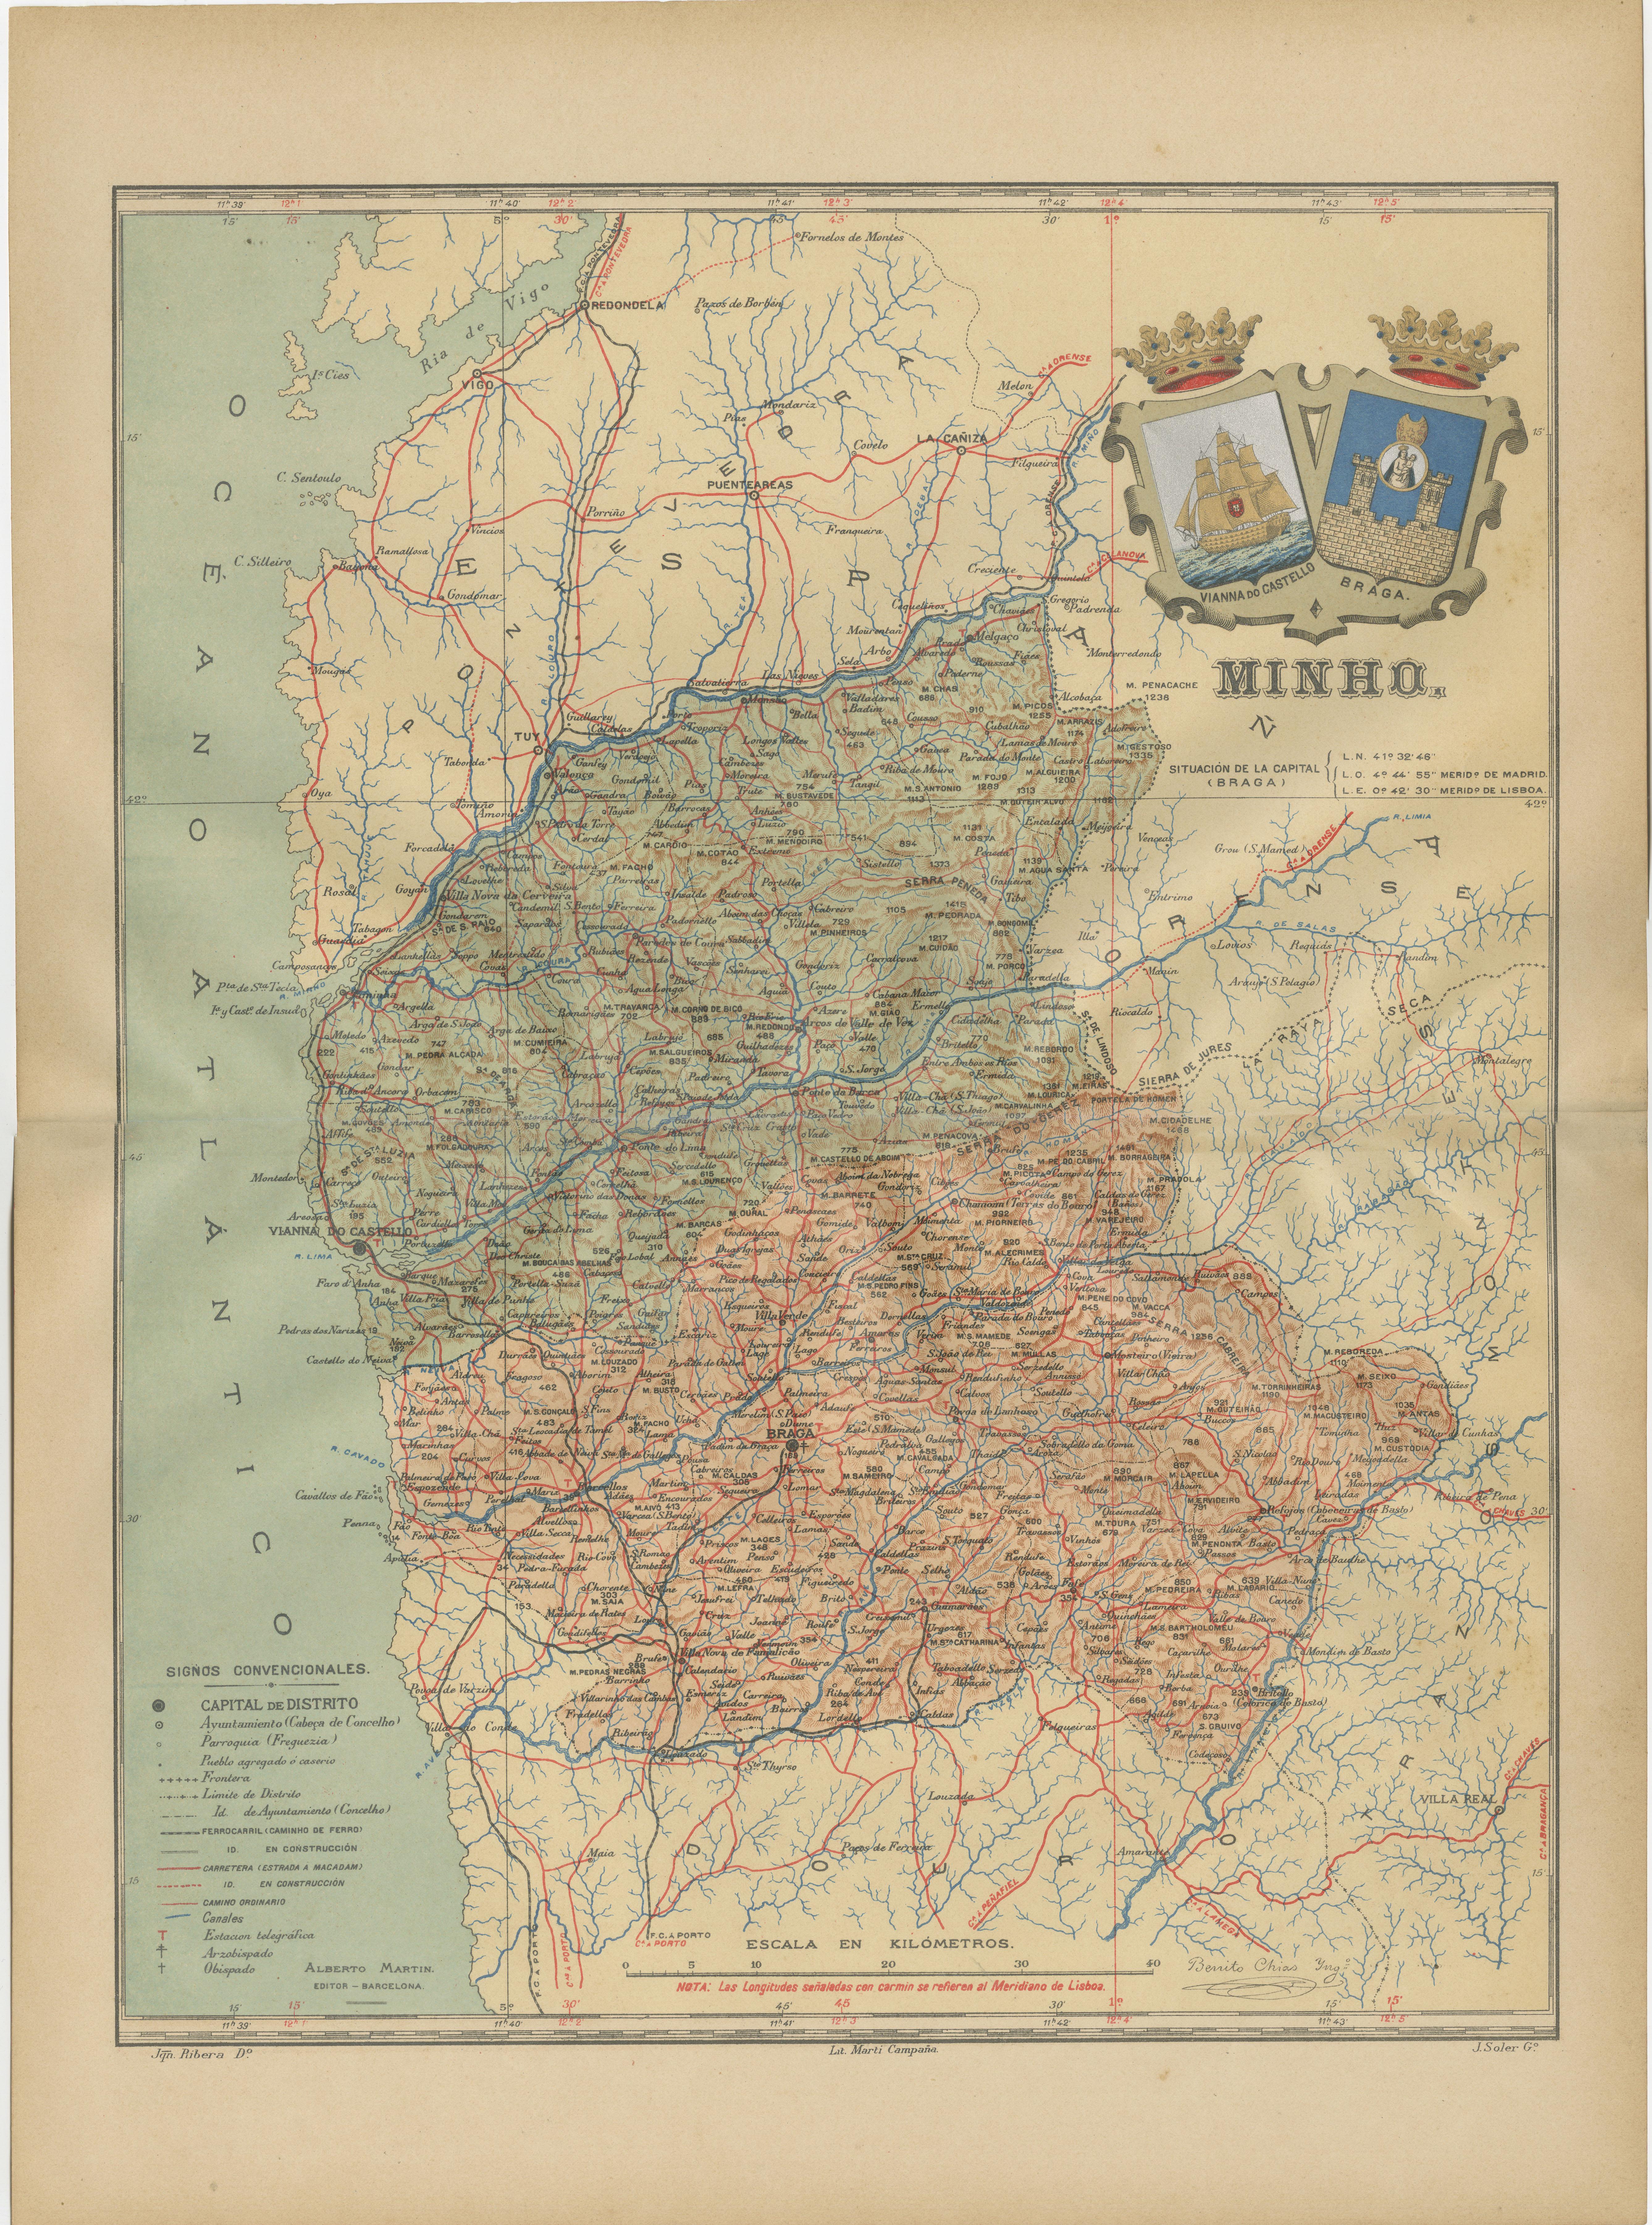 Dieser authentische Druck ist eine historische Karte der Region Minho im nordwestlichen Teil Portugals. Die Karte enthält detaillierte geografische Merkmale wie Flüsse, Gebirgszüge und das verzweigte Straßen- und Schienennetz. Die Region Minho